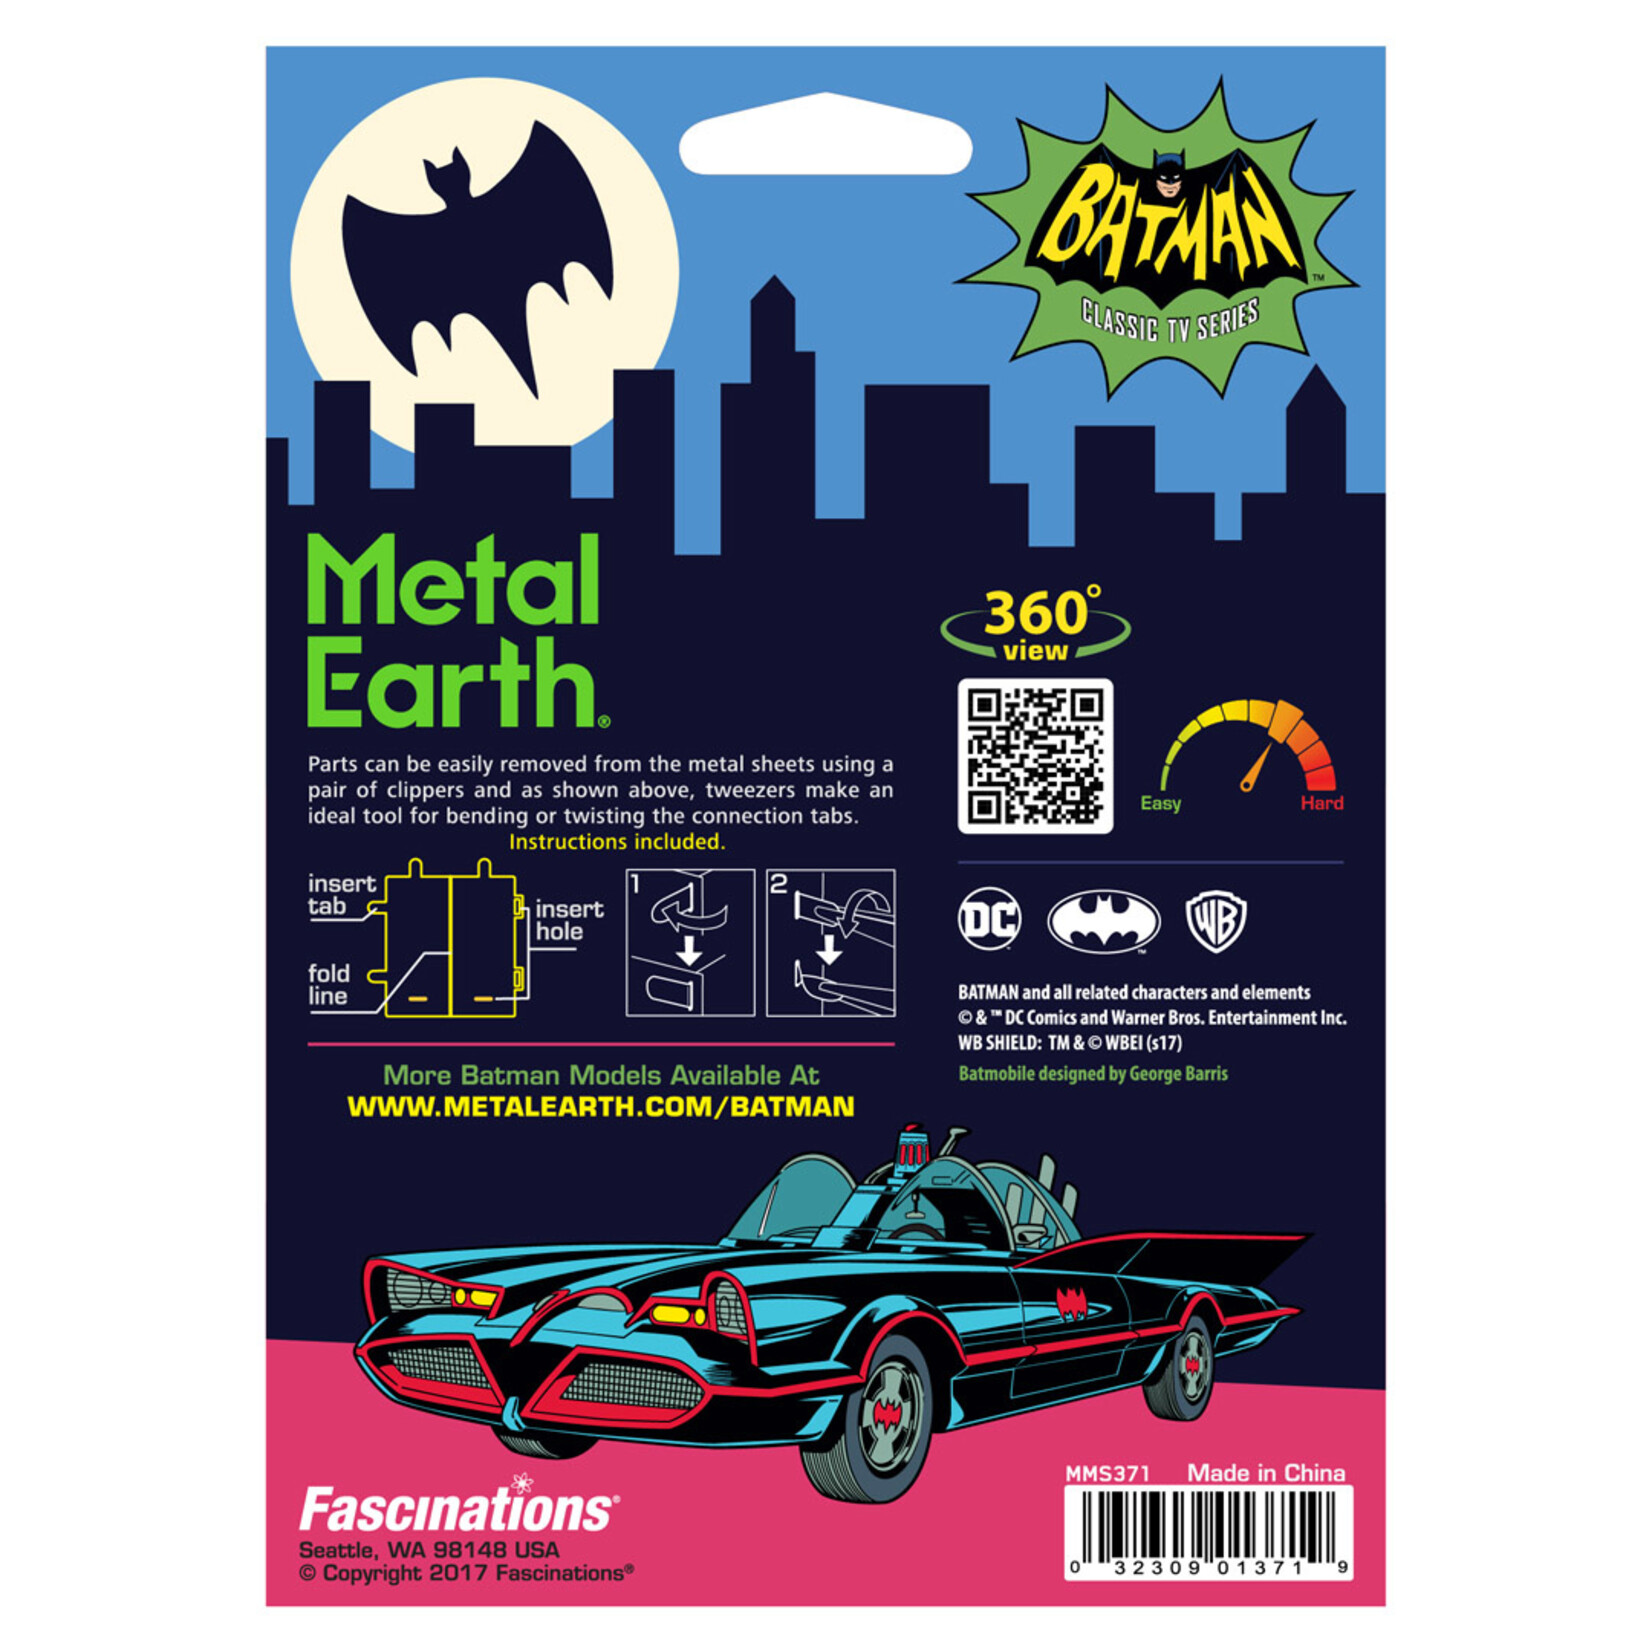 Metal Earth Metal Earth - Batman Classic TV Series : Batmobile